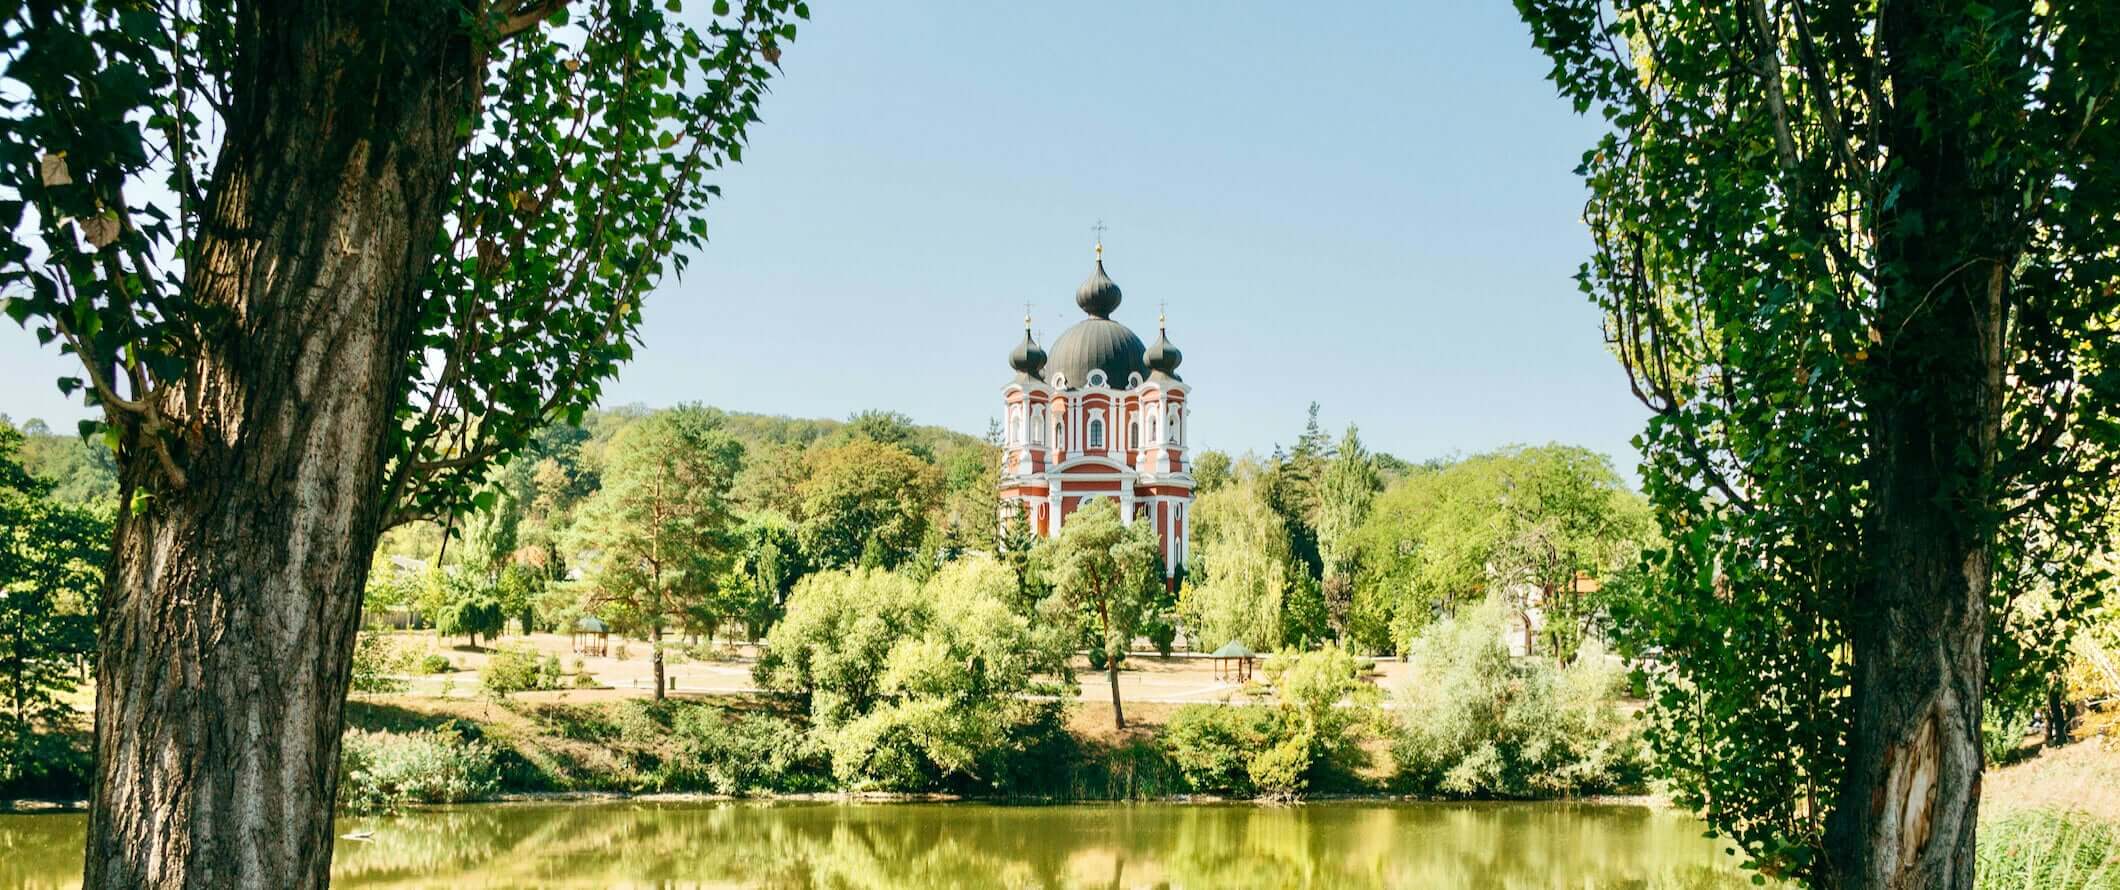 A famosa igreja na Moldávia, elevand o-se entre as florestas